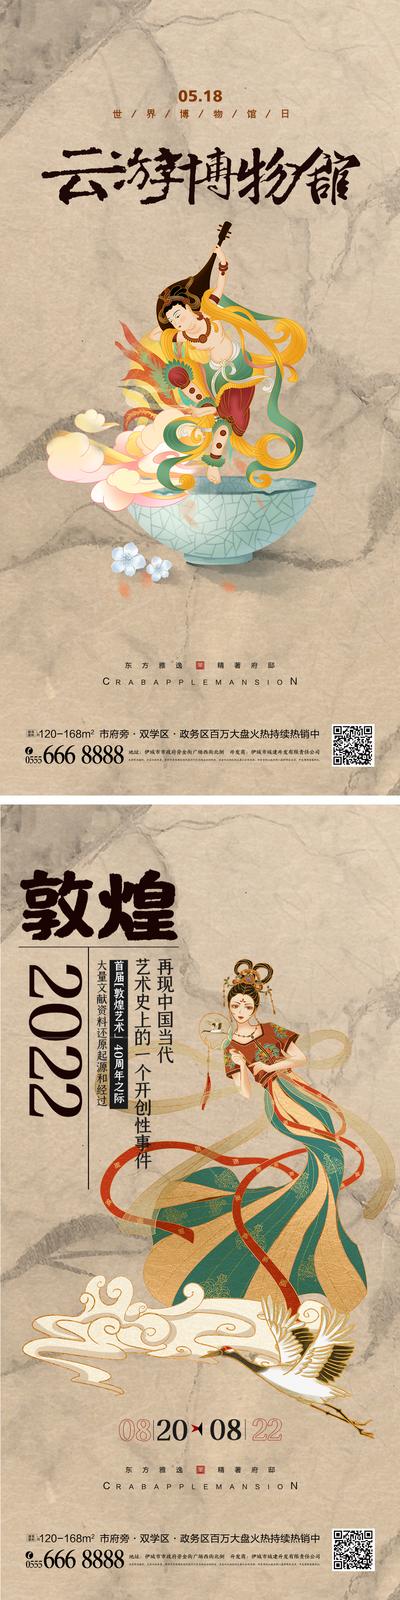 南门网 海报 创意 敦煌 展览 传统艺术 中国风 博物馆